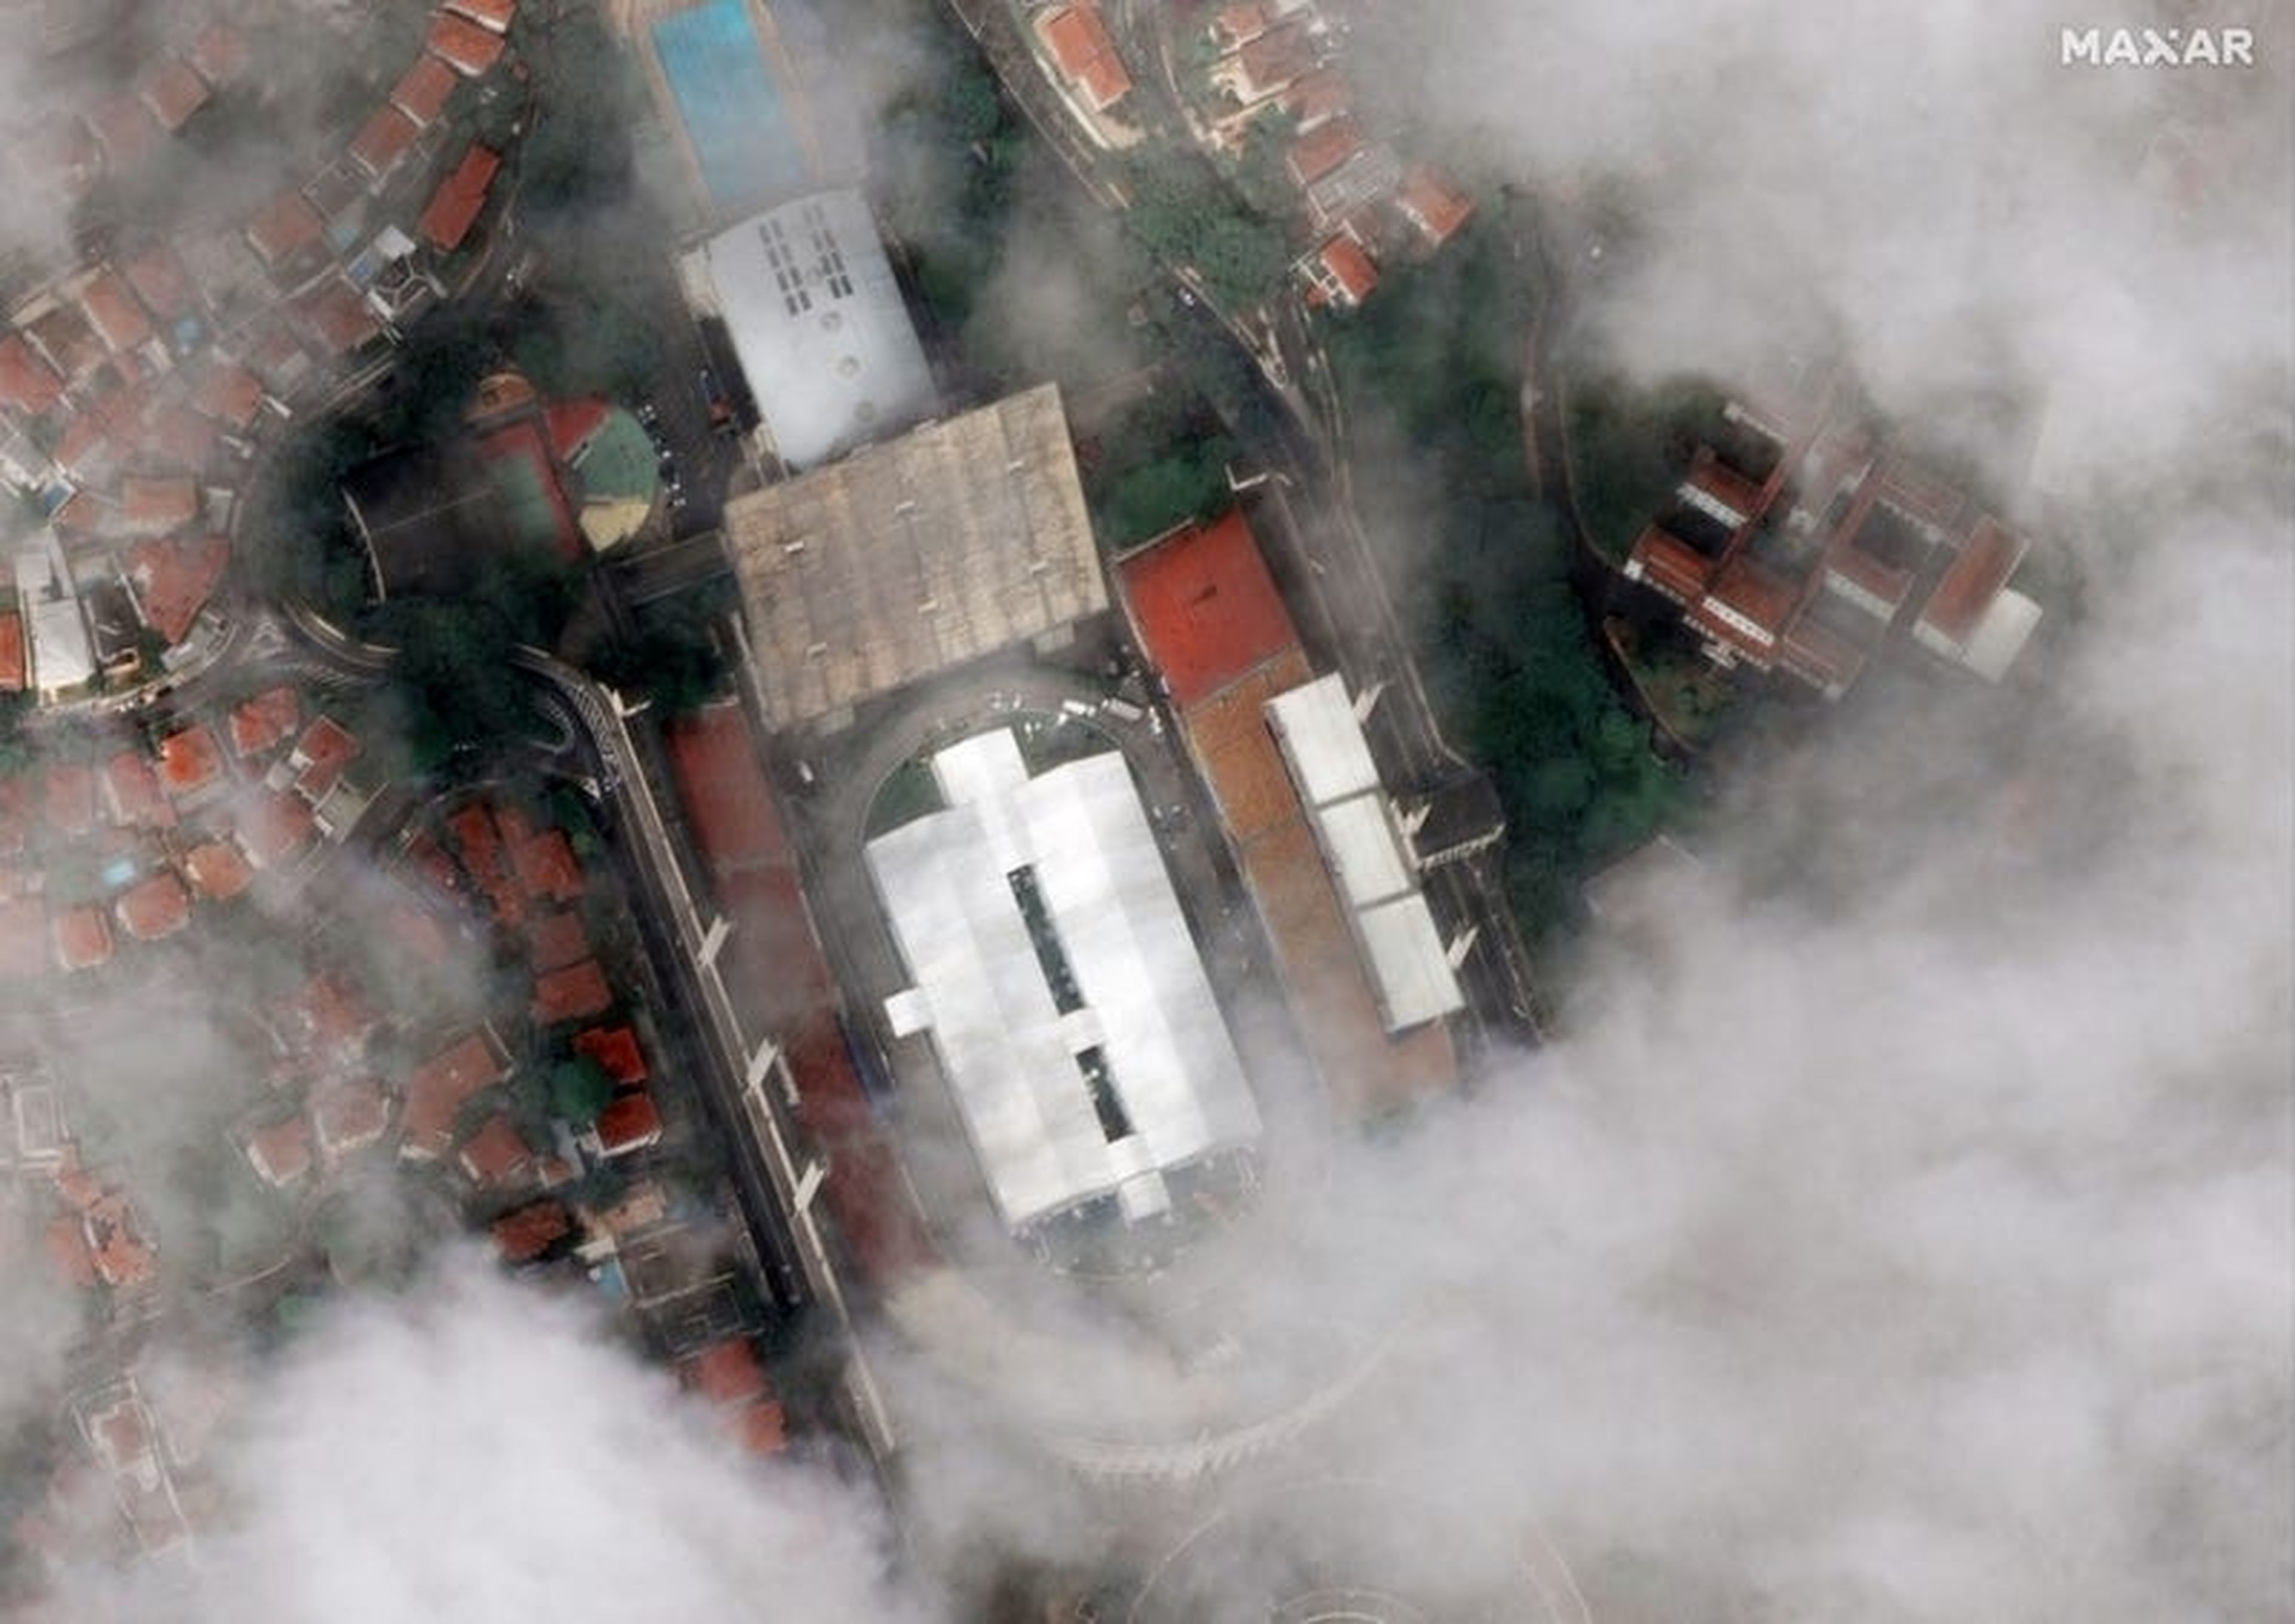 Esta imagen muestra un enorme hospital de campaña construido en medio del estadio Pacaembu en Sao Paulo, Brasil